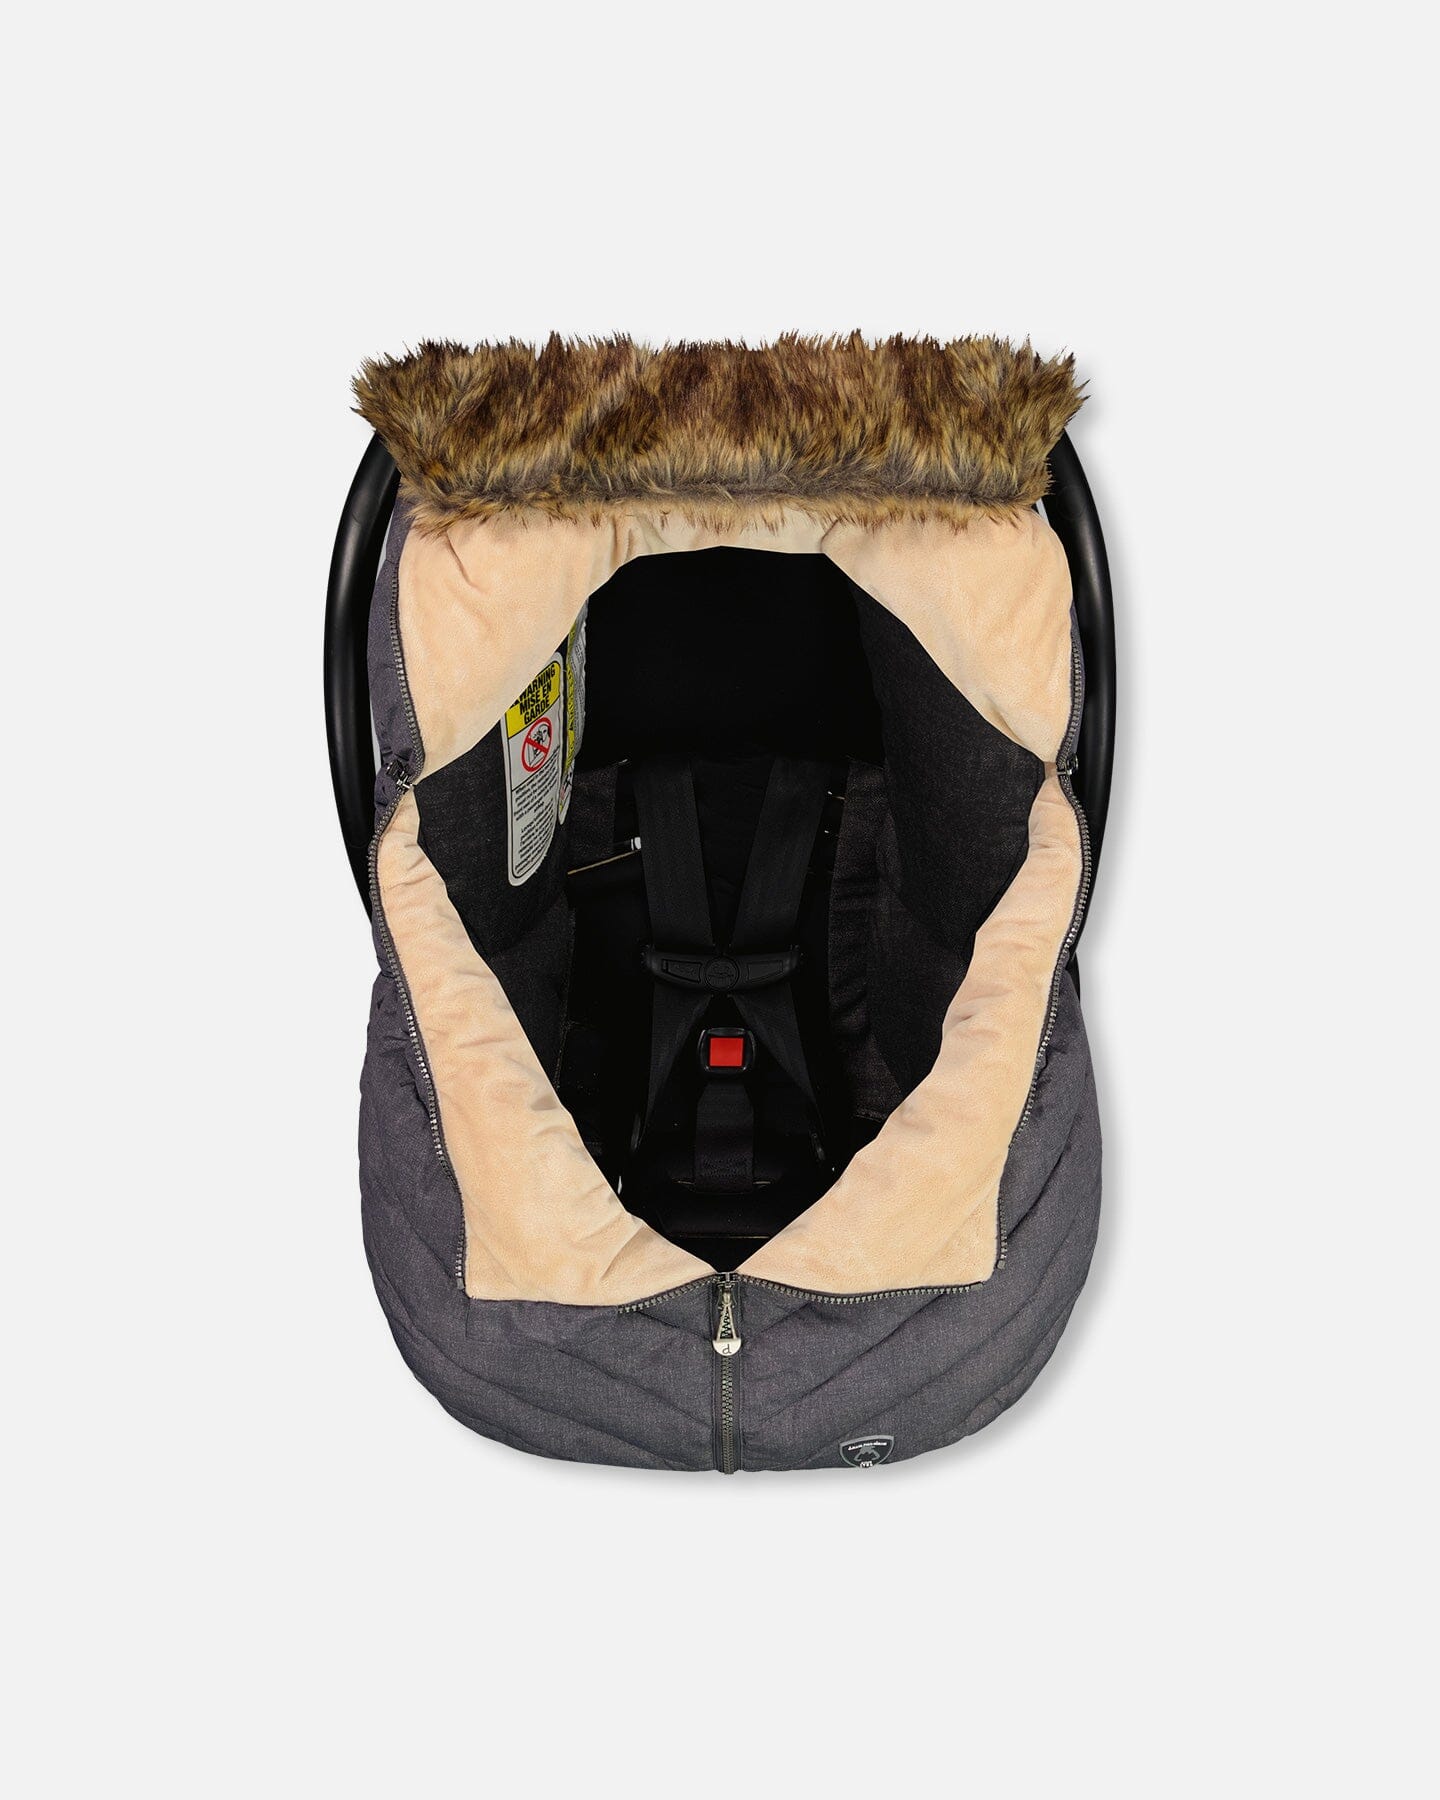 Winter Car Seat Cover Dark Grey With Textured Print Snowsuits Deux par Deux 